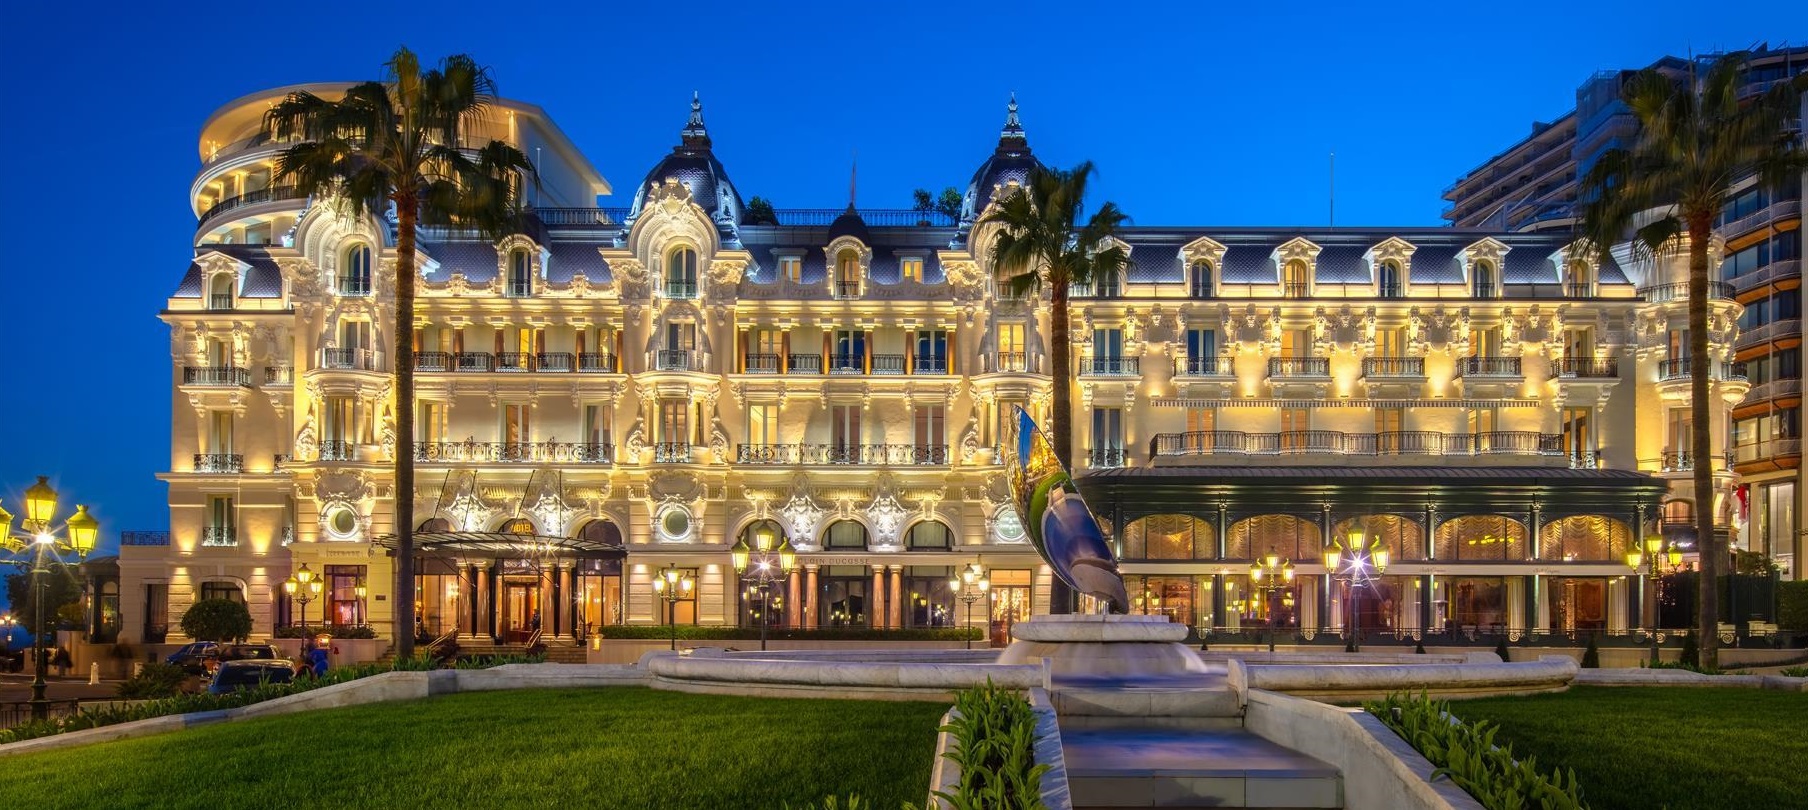 Hôtel de Paris Monte-Carlo in Monaco, Monaco from $291: Deals